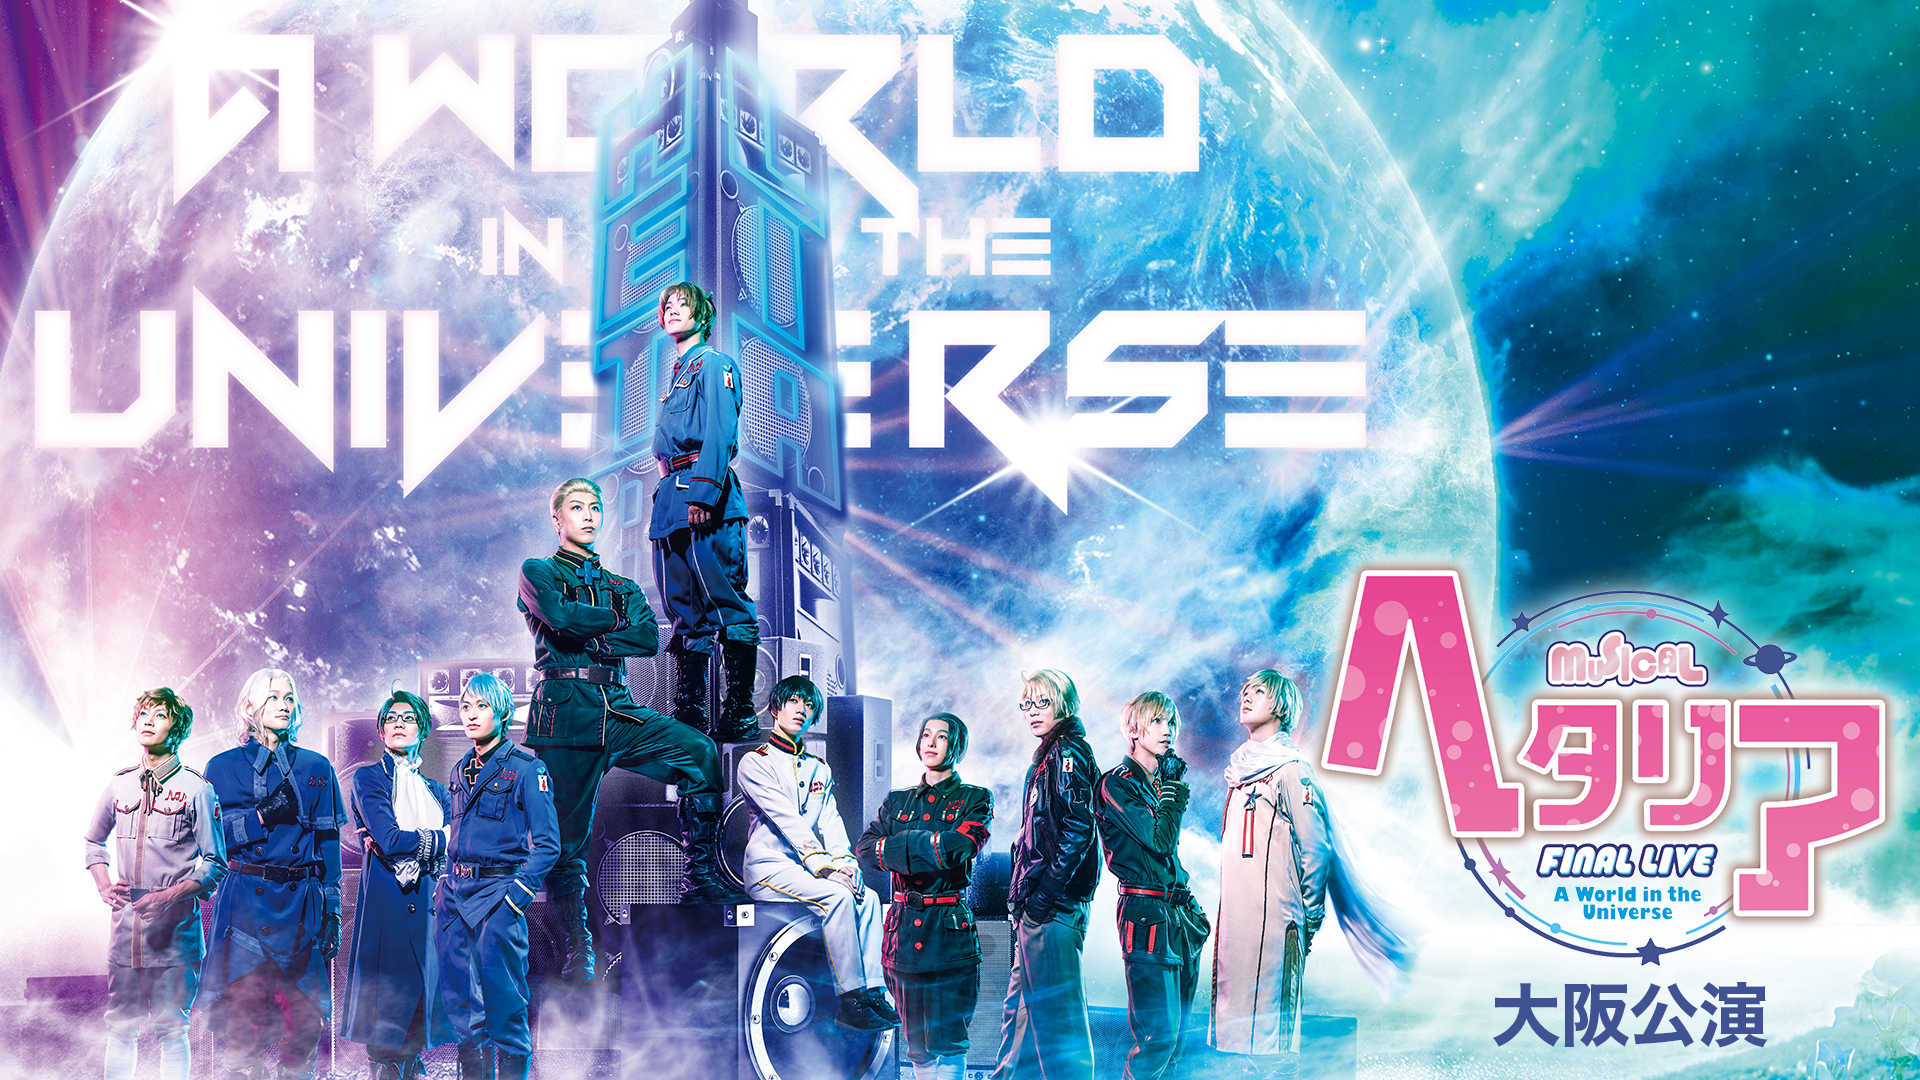 ミュージカル「ヘタリア」FINAL LIVE〜A World in the Universe〜 大阪